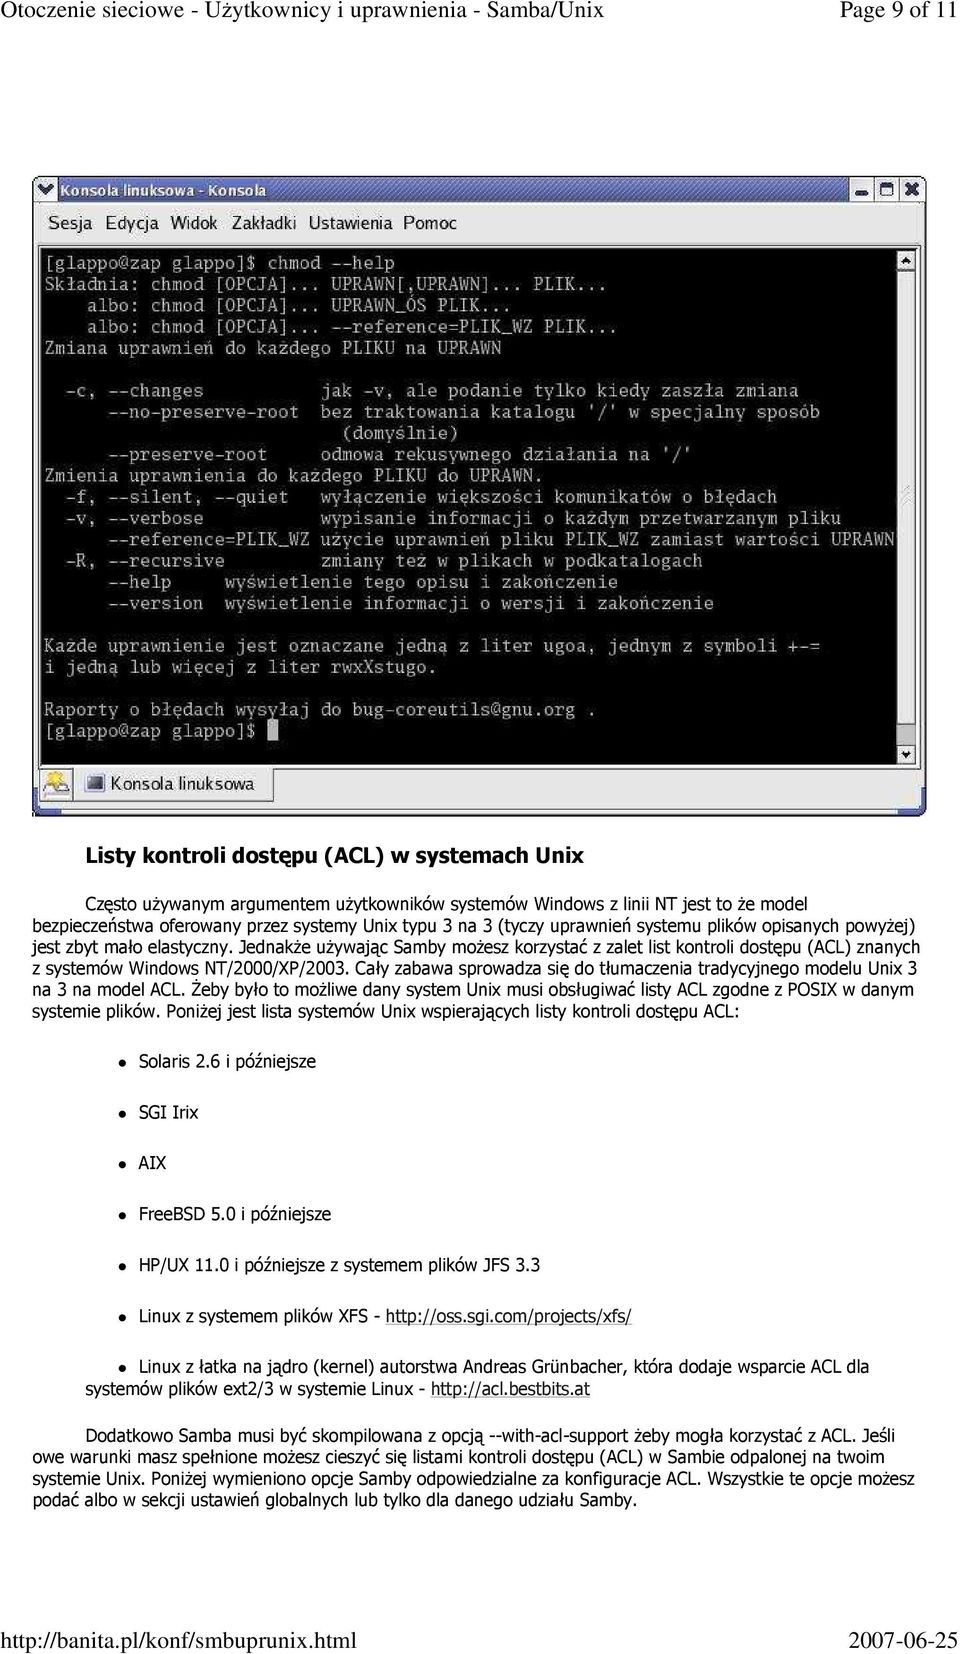 Cały zabawa sprowadza się do tłumaczenia tradycyjnego modelu Unix 3 na 3 na model ACL. śeby było to moŝliwe dany system Unix musi obsługiwać listy ACL zgodne z POSIX w danym systemie plików.